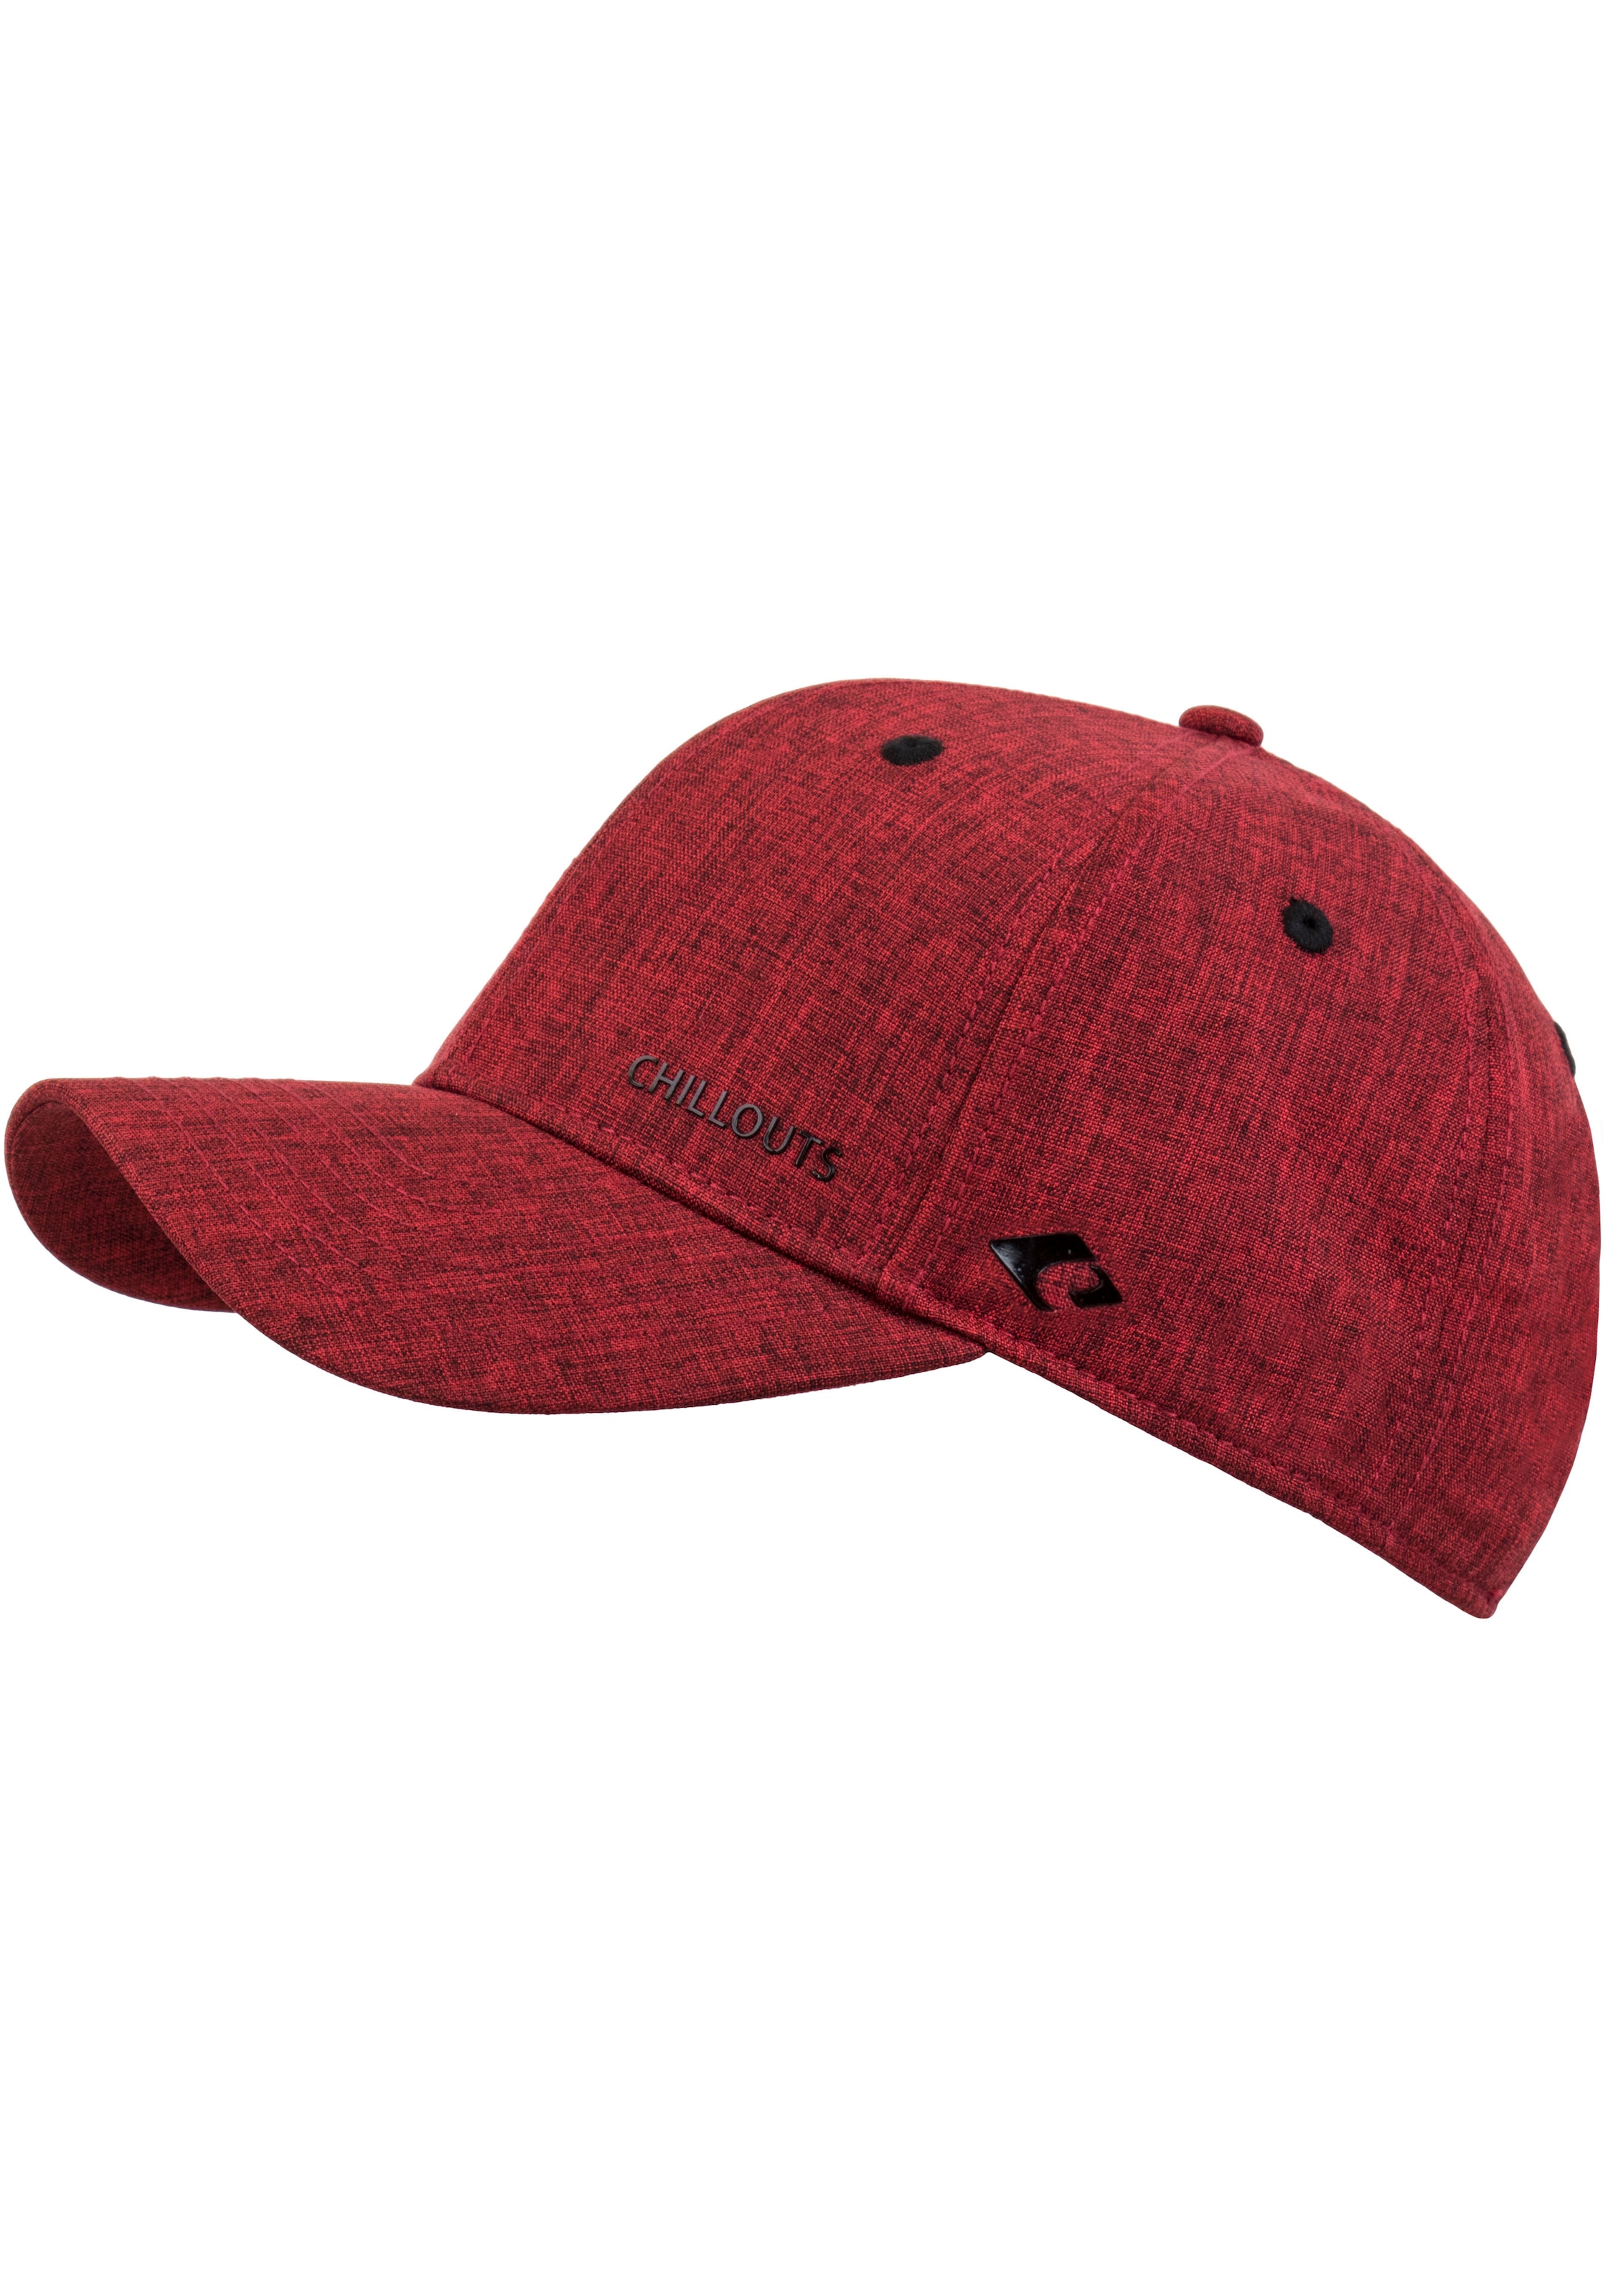 chillouts Baseball Cap »Christchurch Hat« im Online-Shop bestellen | Baseball Caps